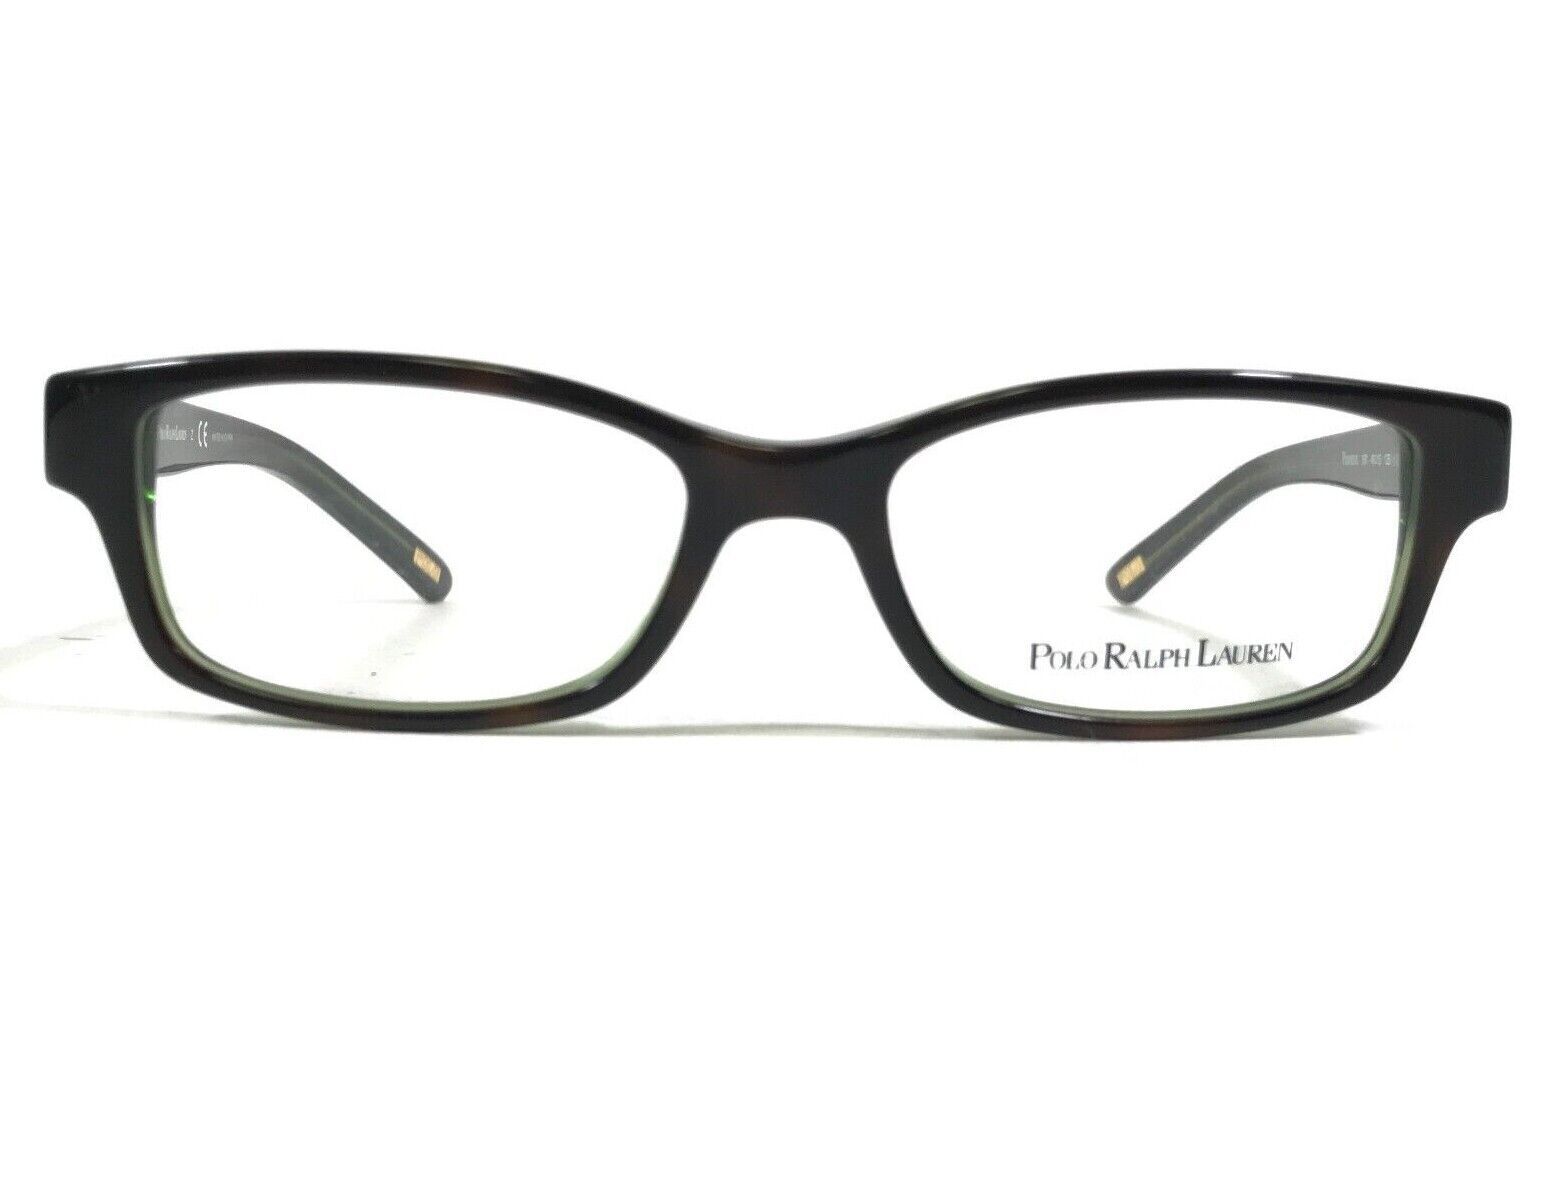 Polo Ralph Lauren 8518 597 Kids Eyeglasses Frames Brown Green Full Rim 46-15-125 - $46.54